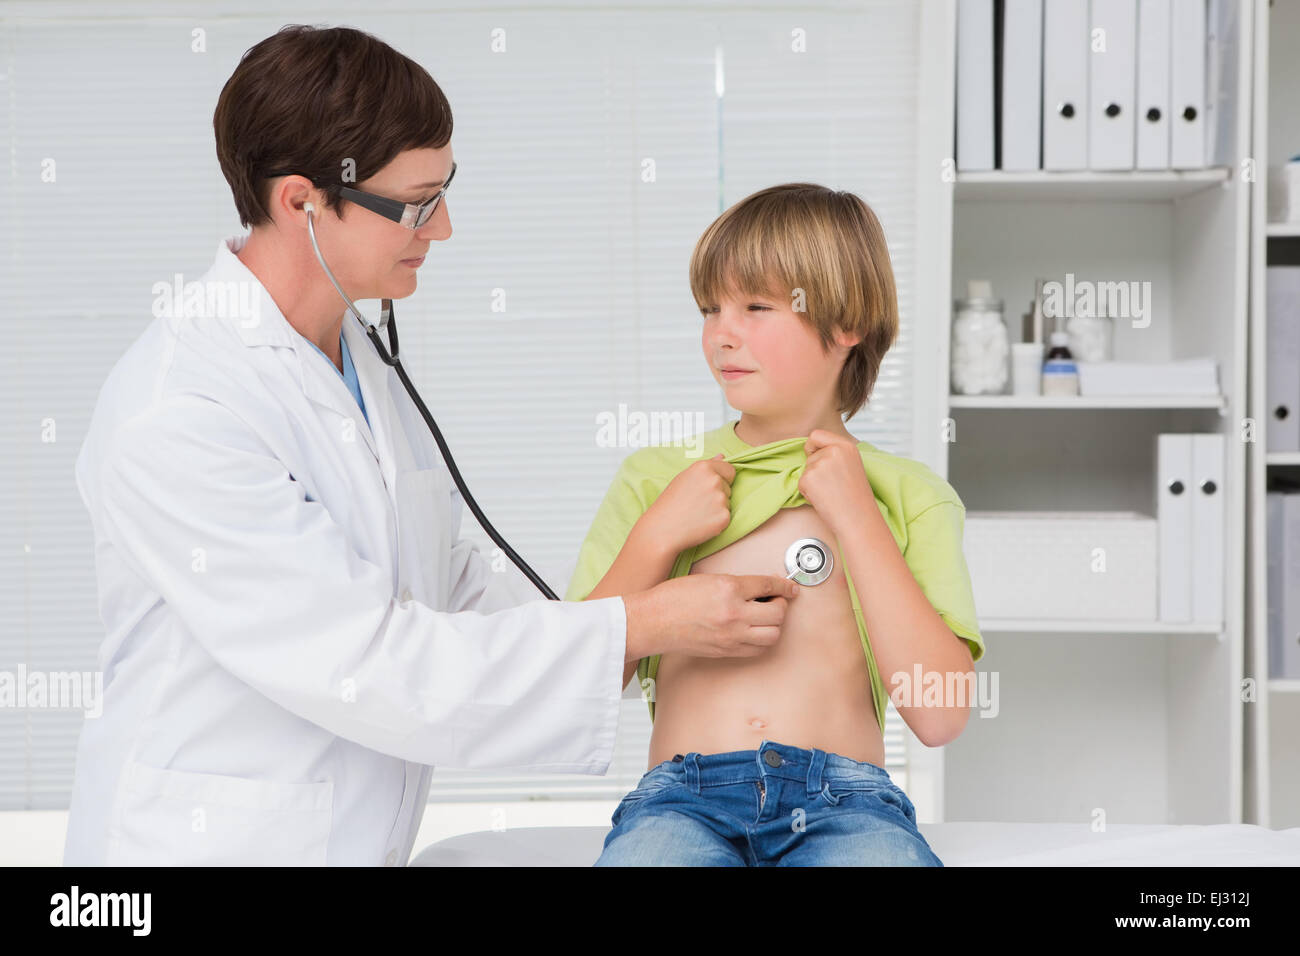 Врач проверяет мальчика. Врач осматривает мальчика. Мальчик у врача. Врач осматривает ребенка. Медосмотр стетоскопом.